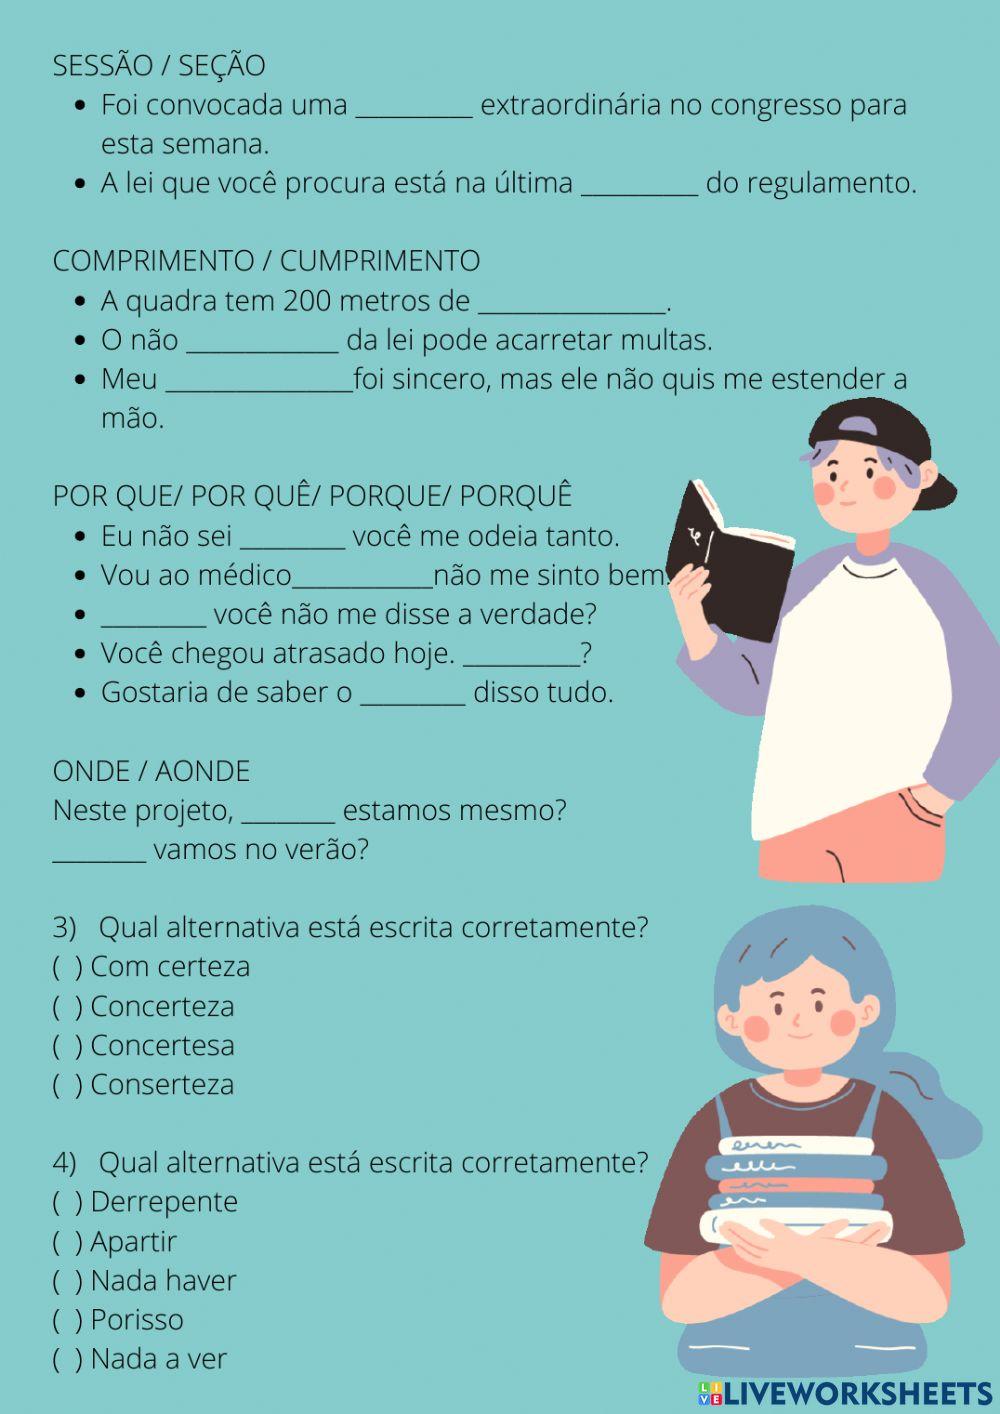 Erros comuns em língua portuguesa